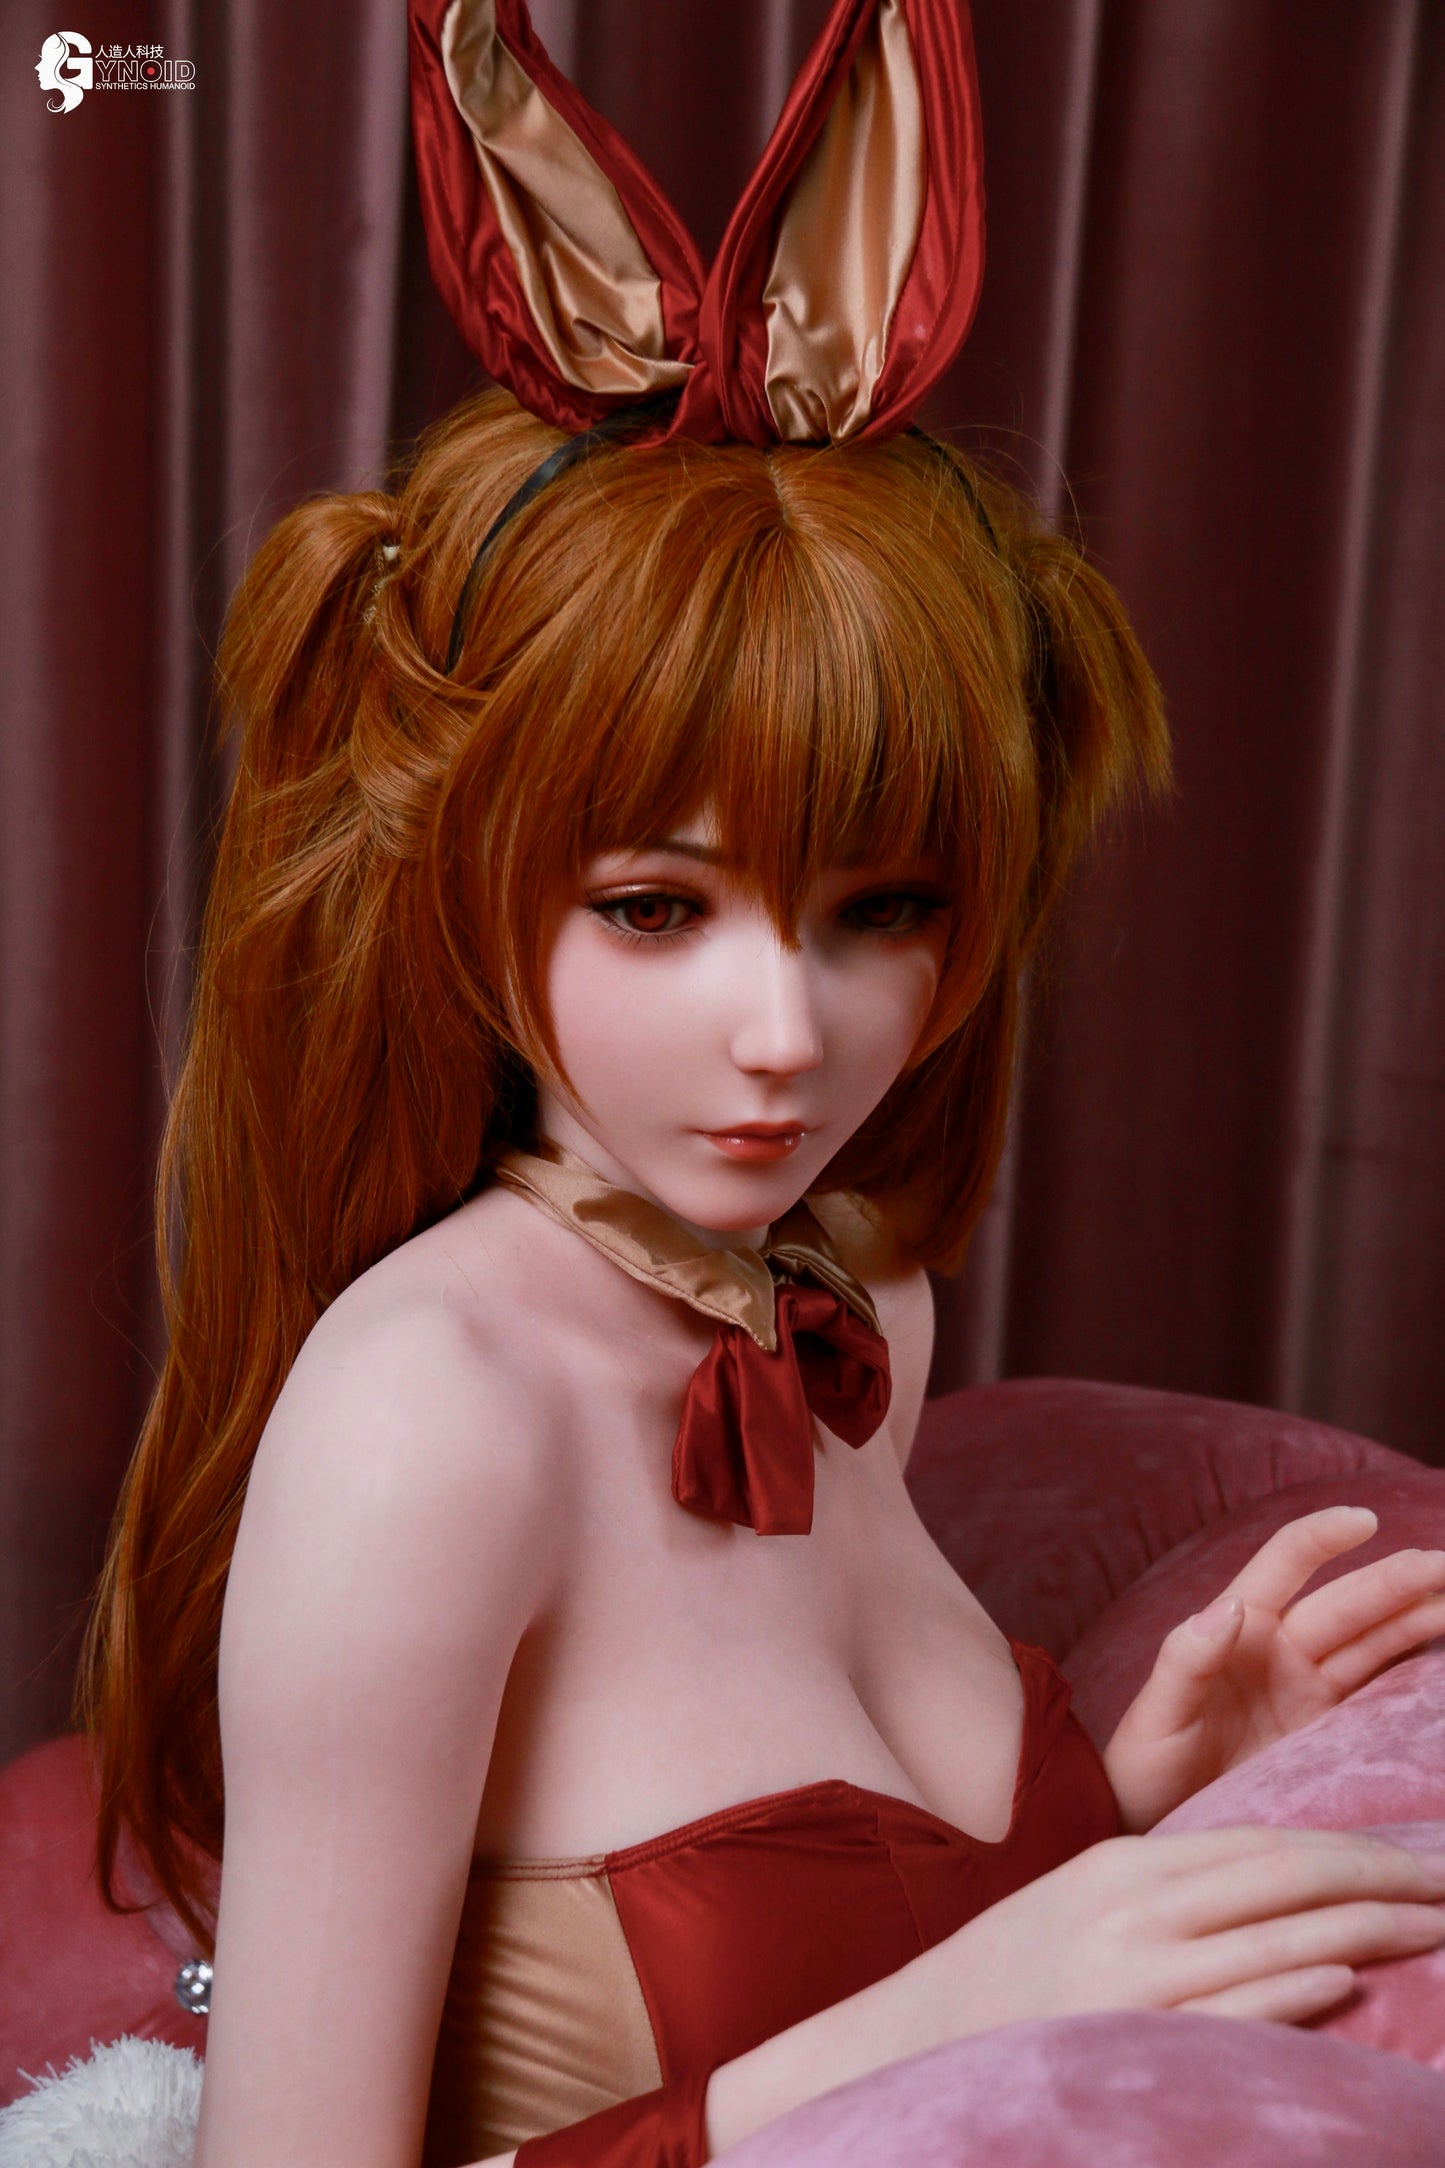 Gynoid Model 14 - Ada - Love Dolls 4U